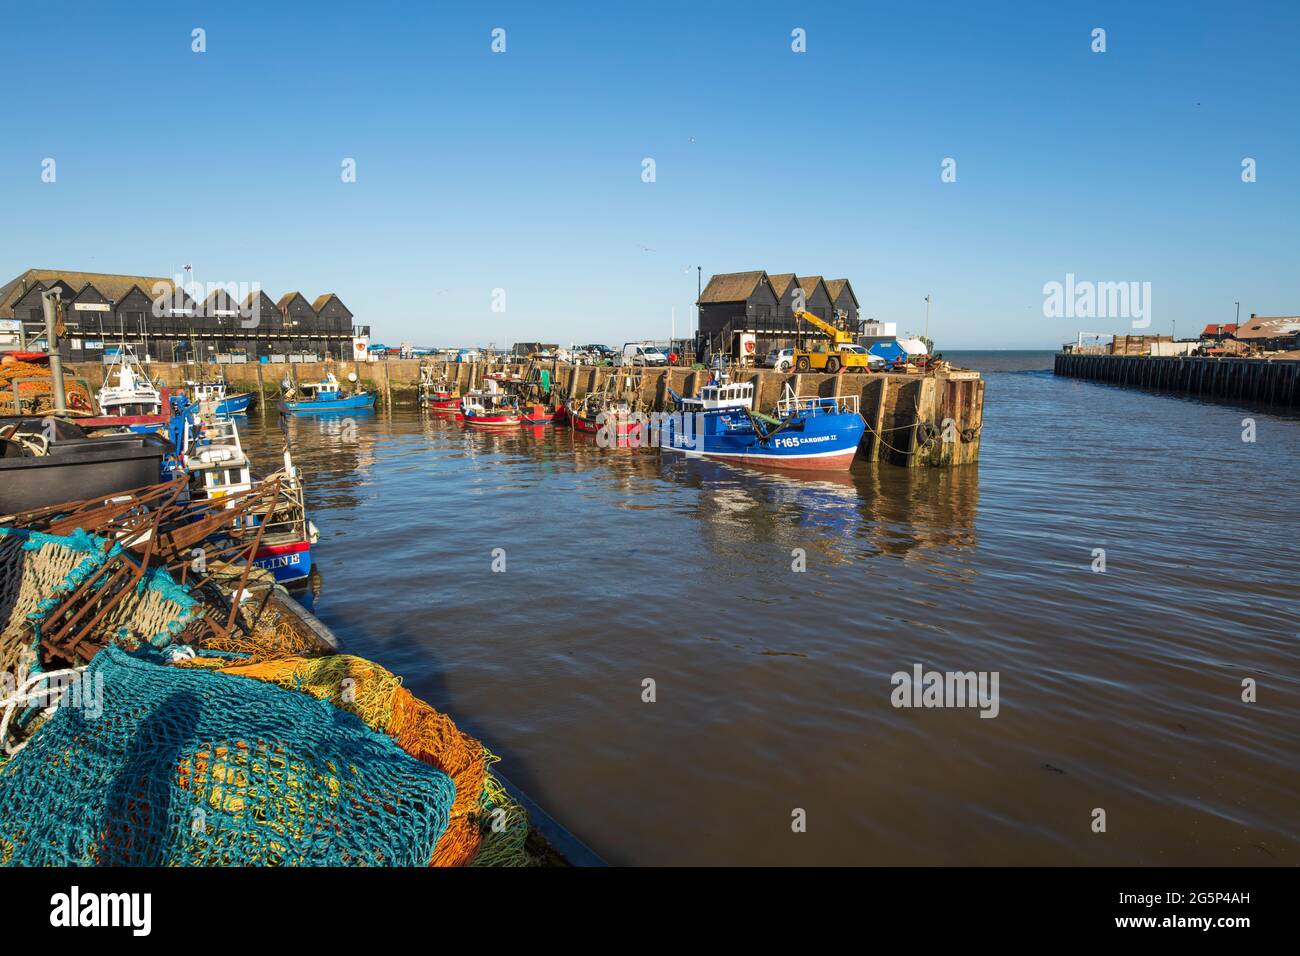 Le port de pêche, Whitstable, Kent, Angleterre, Royaume-Uni, Europe Banque D'Images